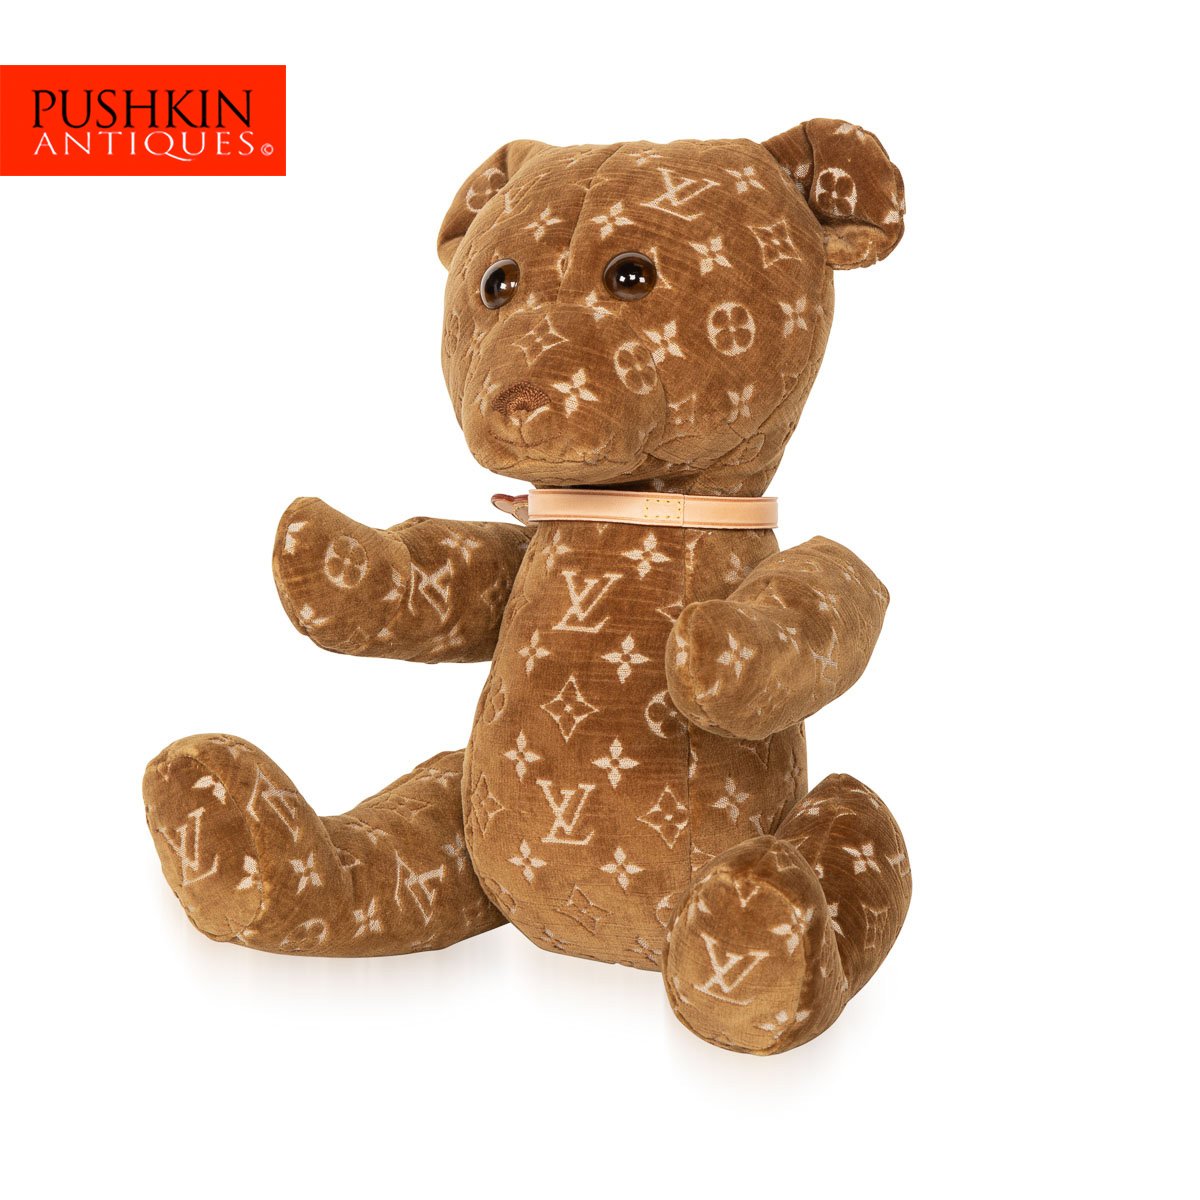 Fashion teddy - LV limited edition